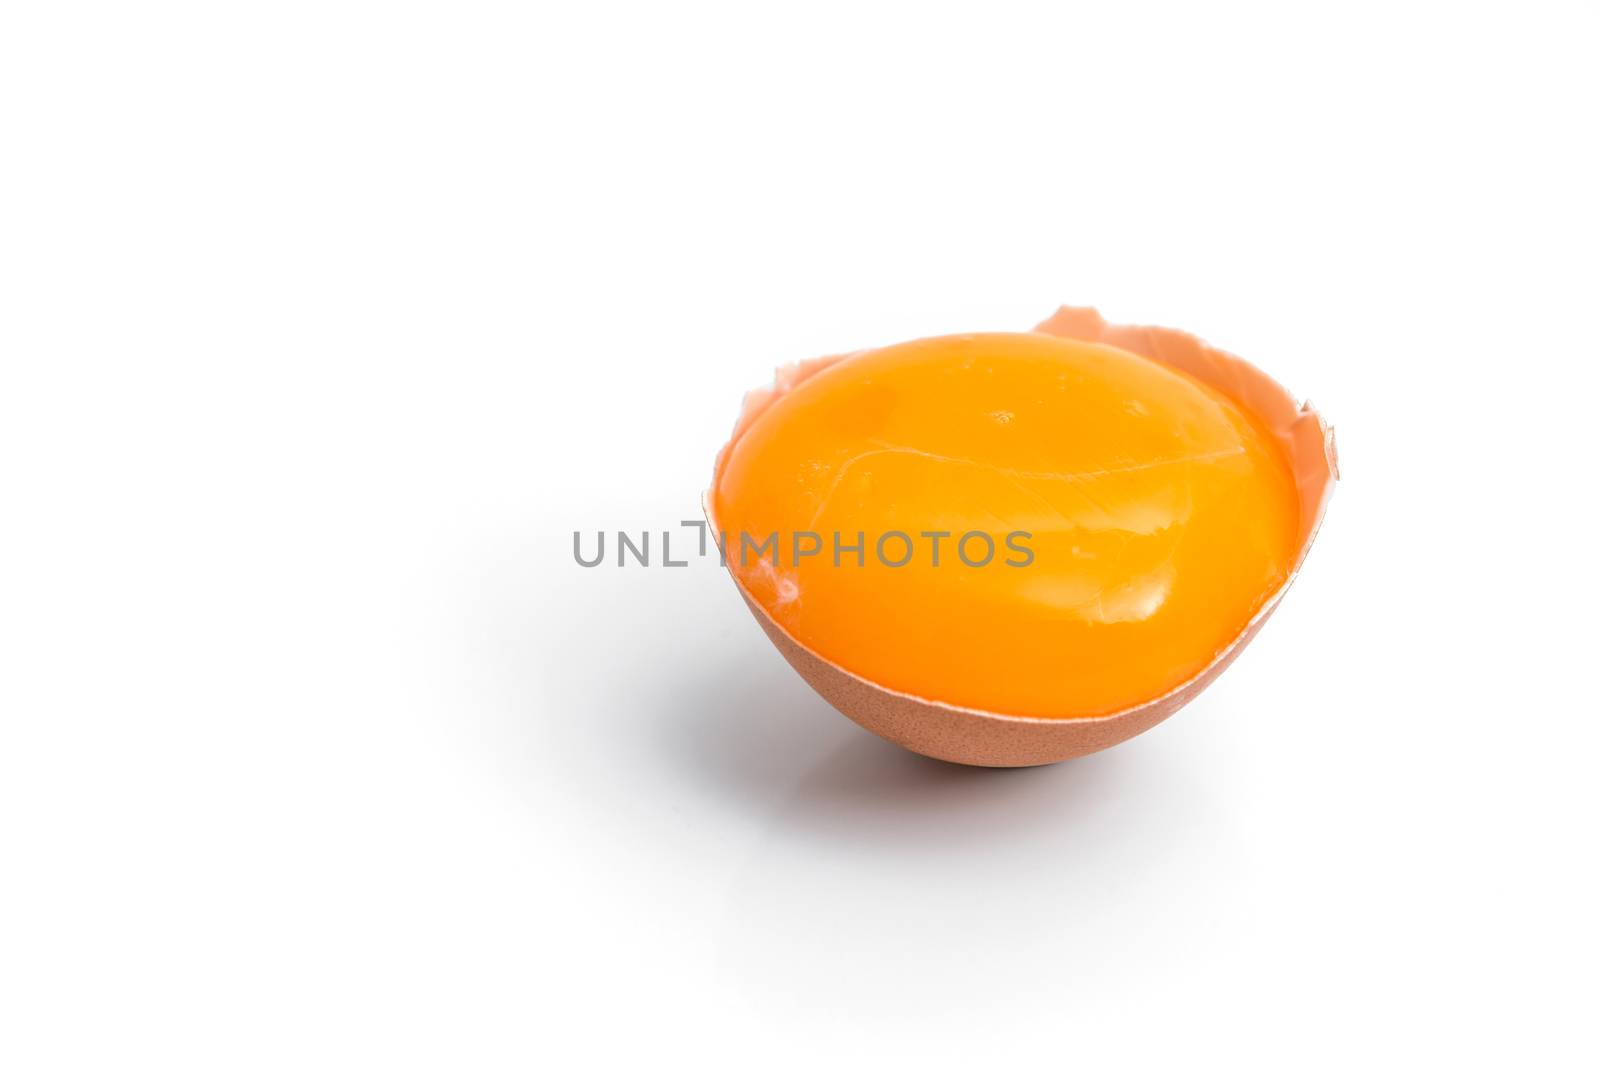 egg yolk in egg shell, cracked egg white isolated on white backg by antpkr